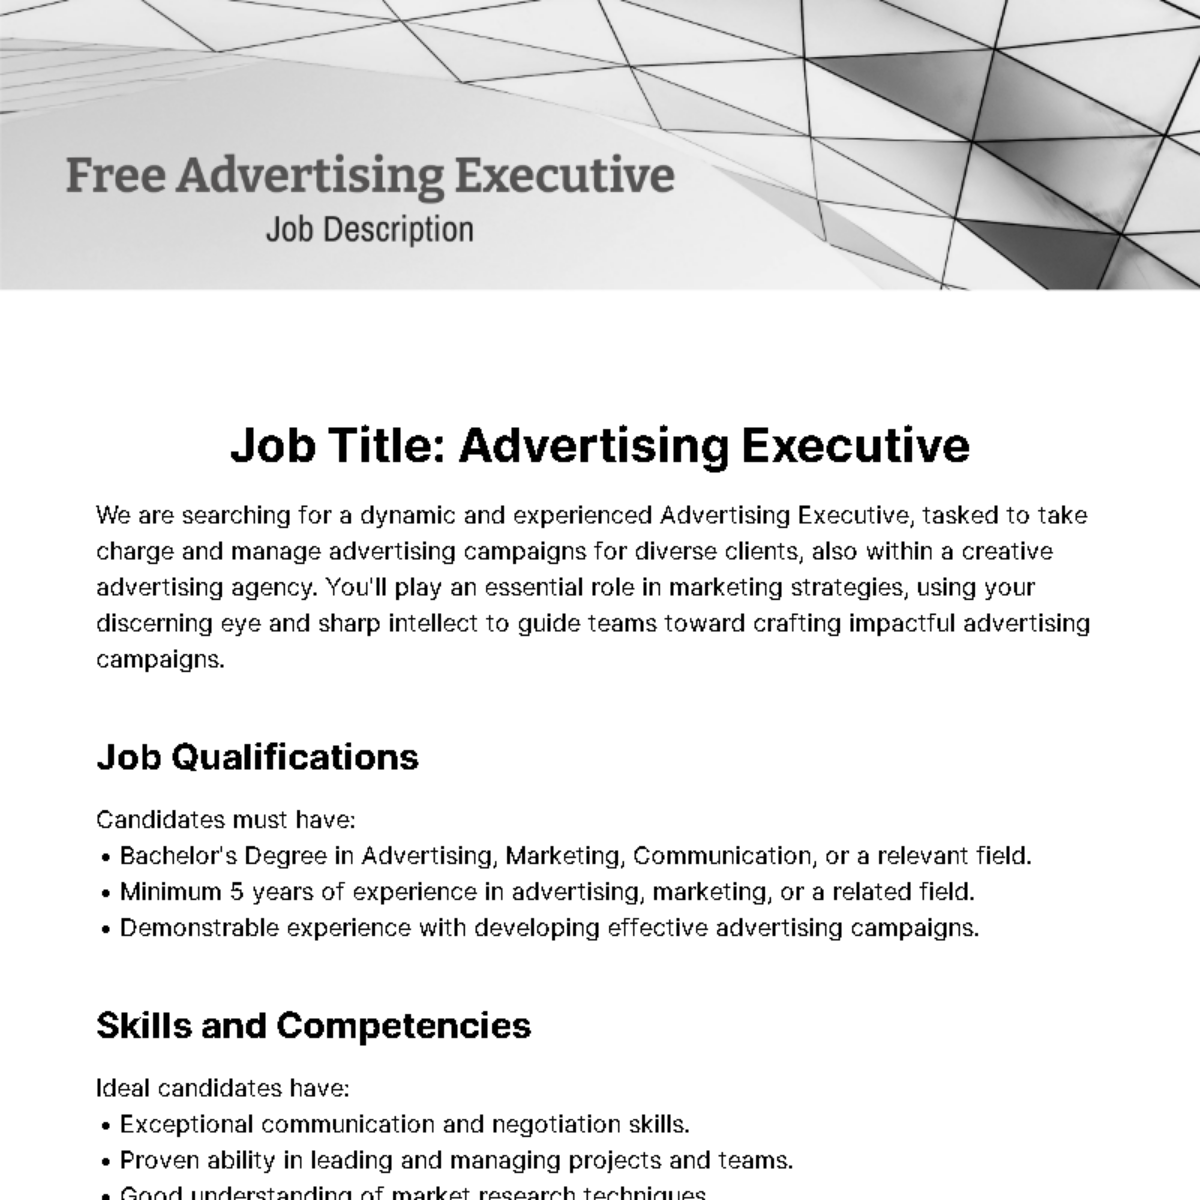 Free Advertising Executive Job Description Template